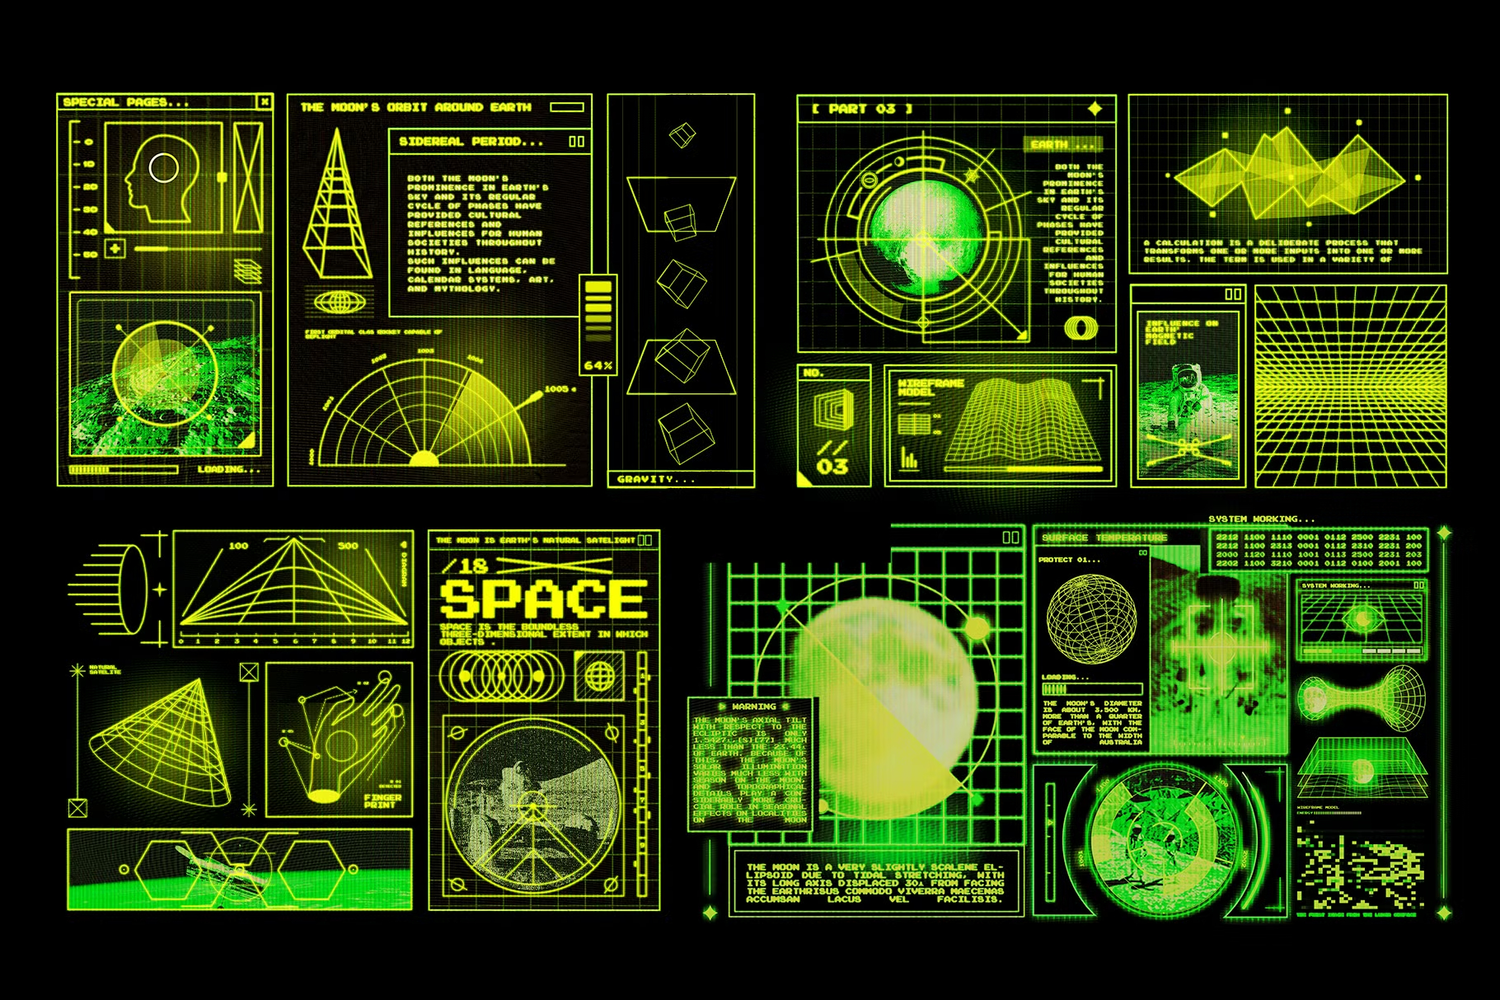 5553 复古未来风格的宇宙飞船HUD显示屏设计元素素材